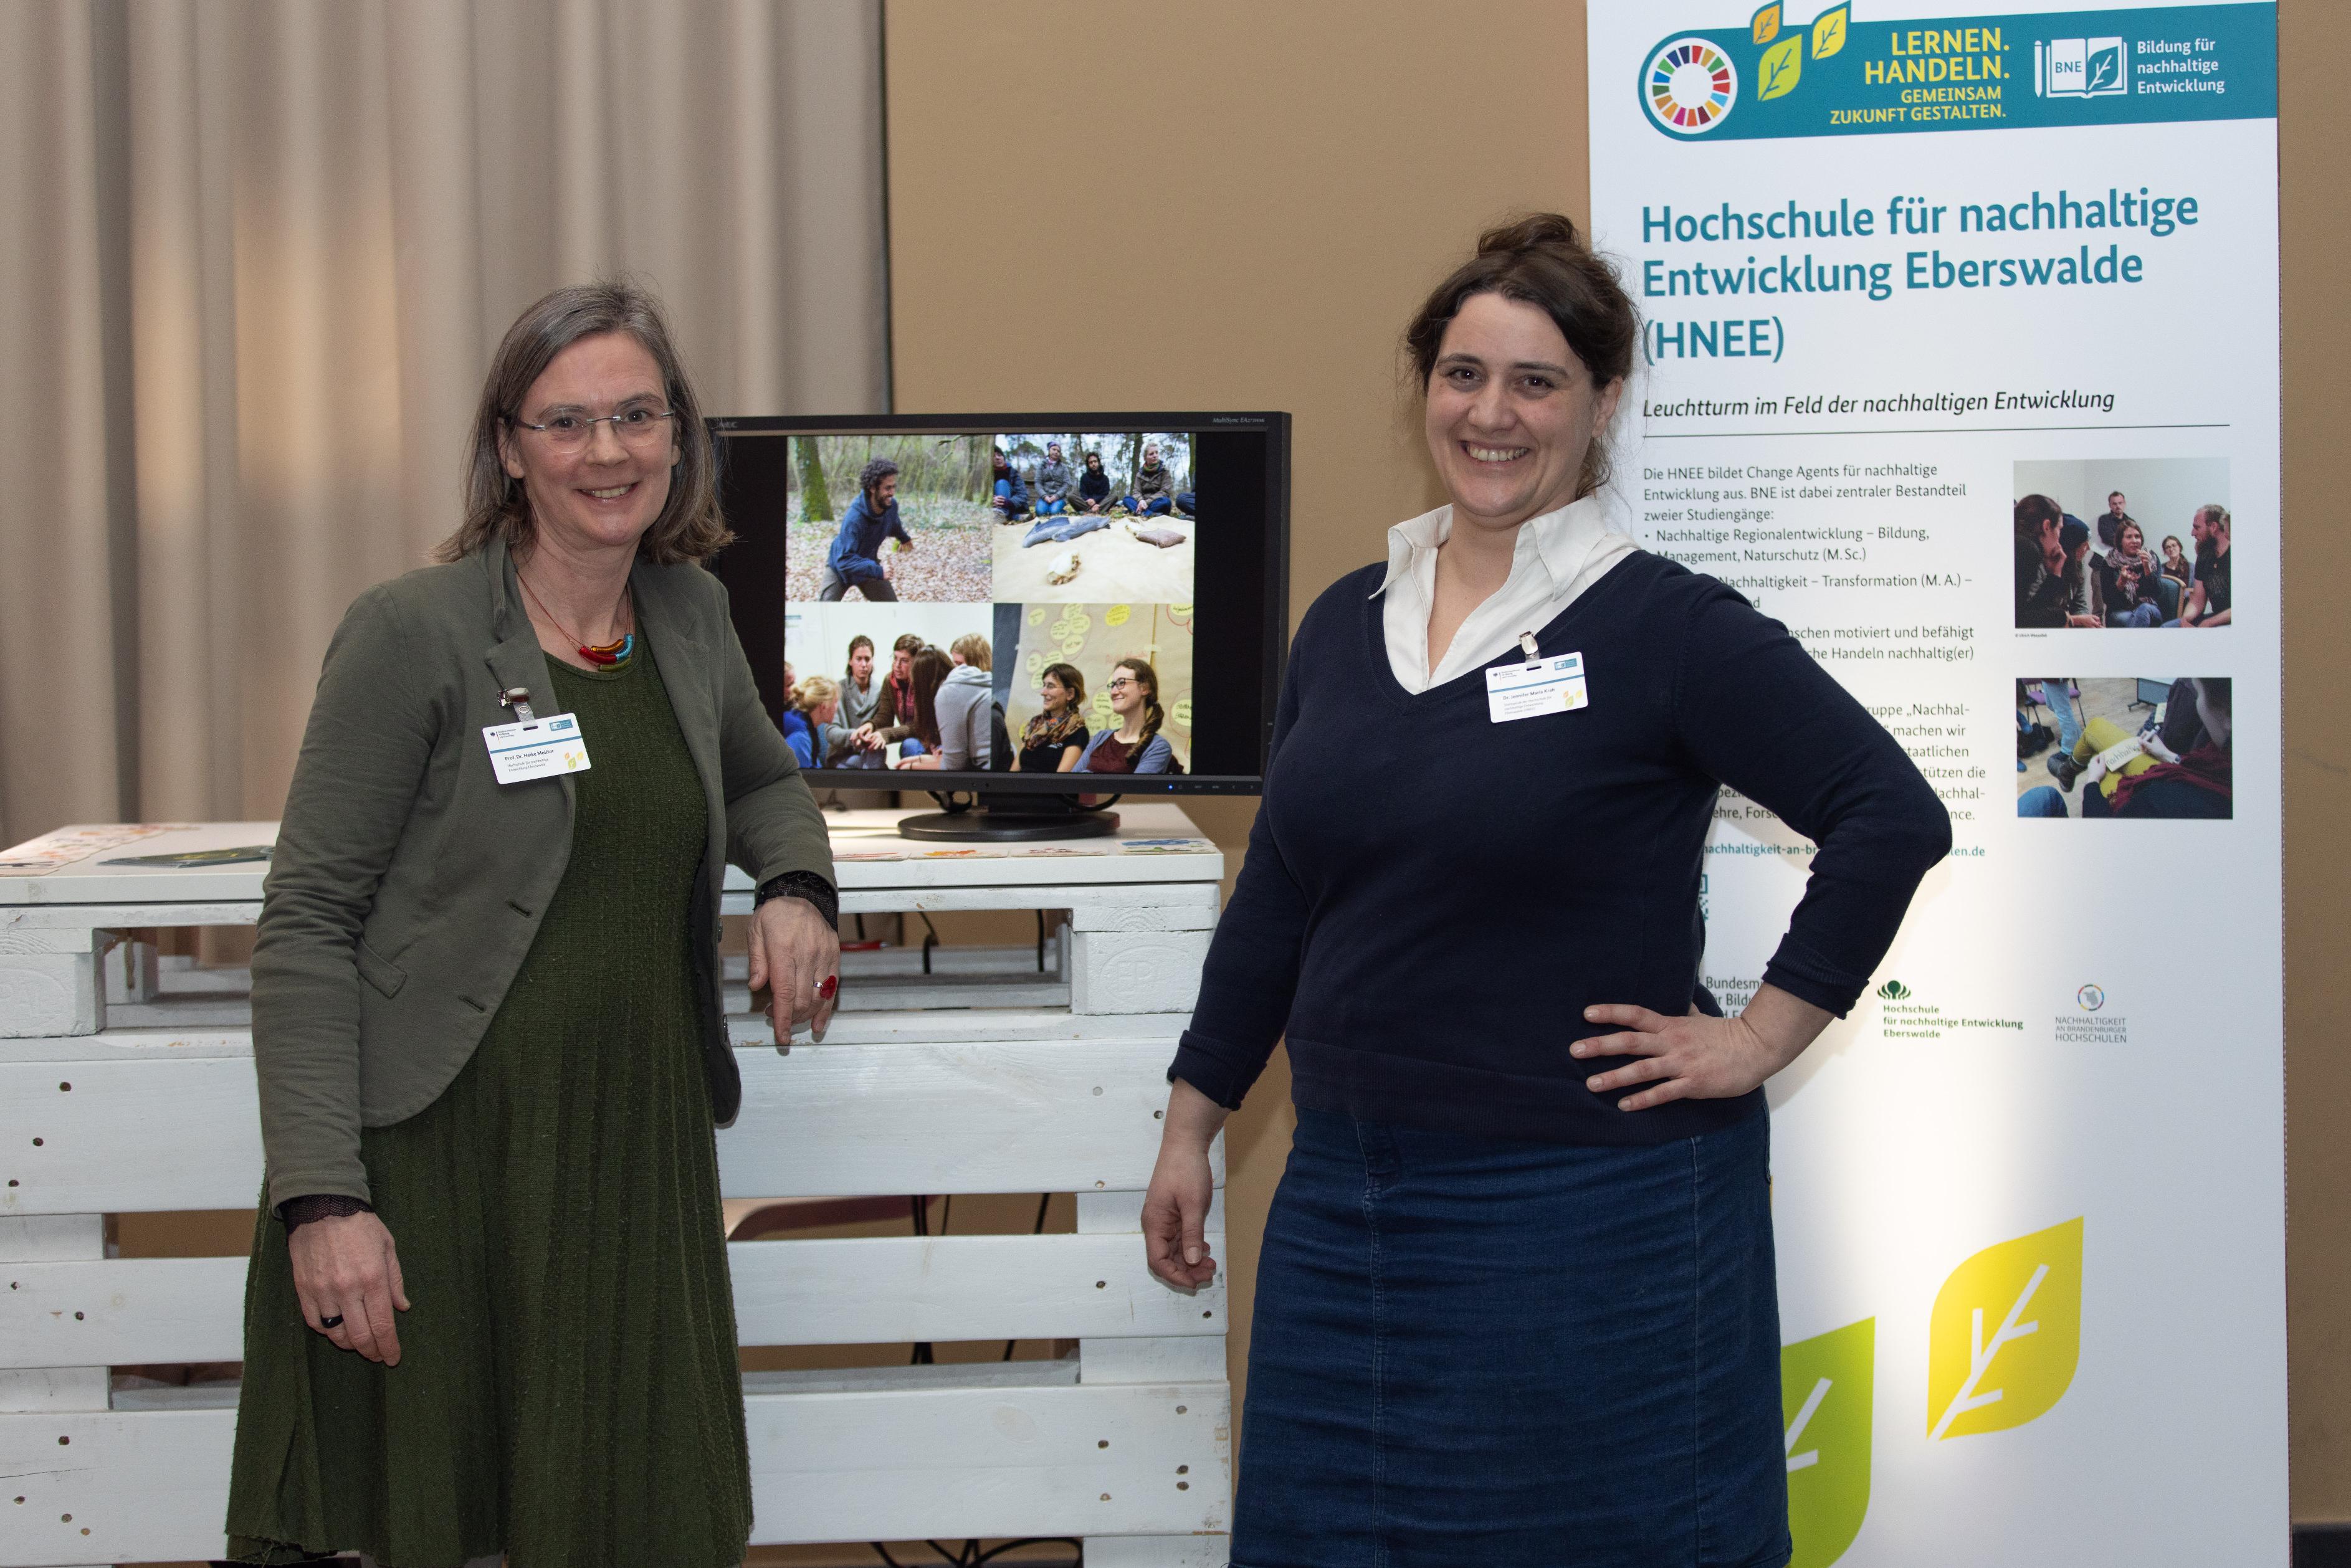 Zwei Dozentinnen der Hochschule für nachhaltige Entwicklung Eberswalde stehen vor einem Stand